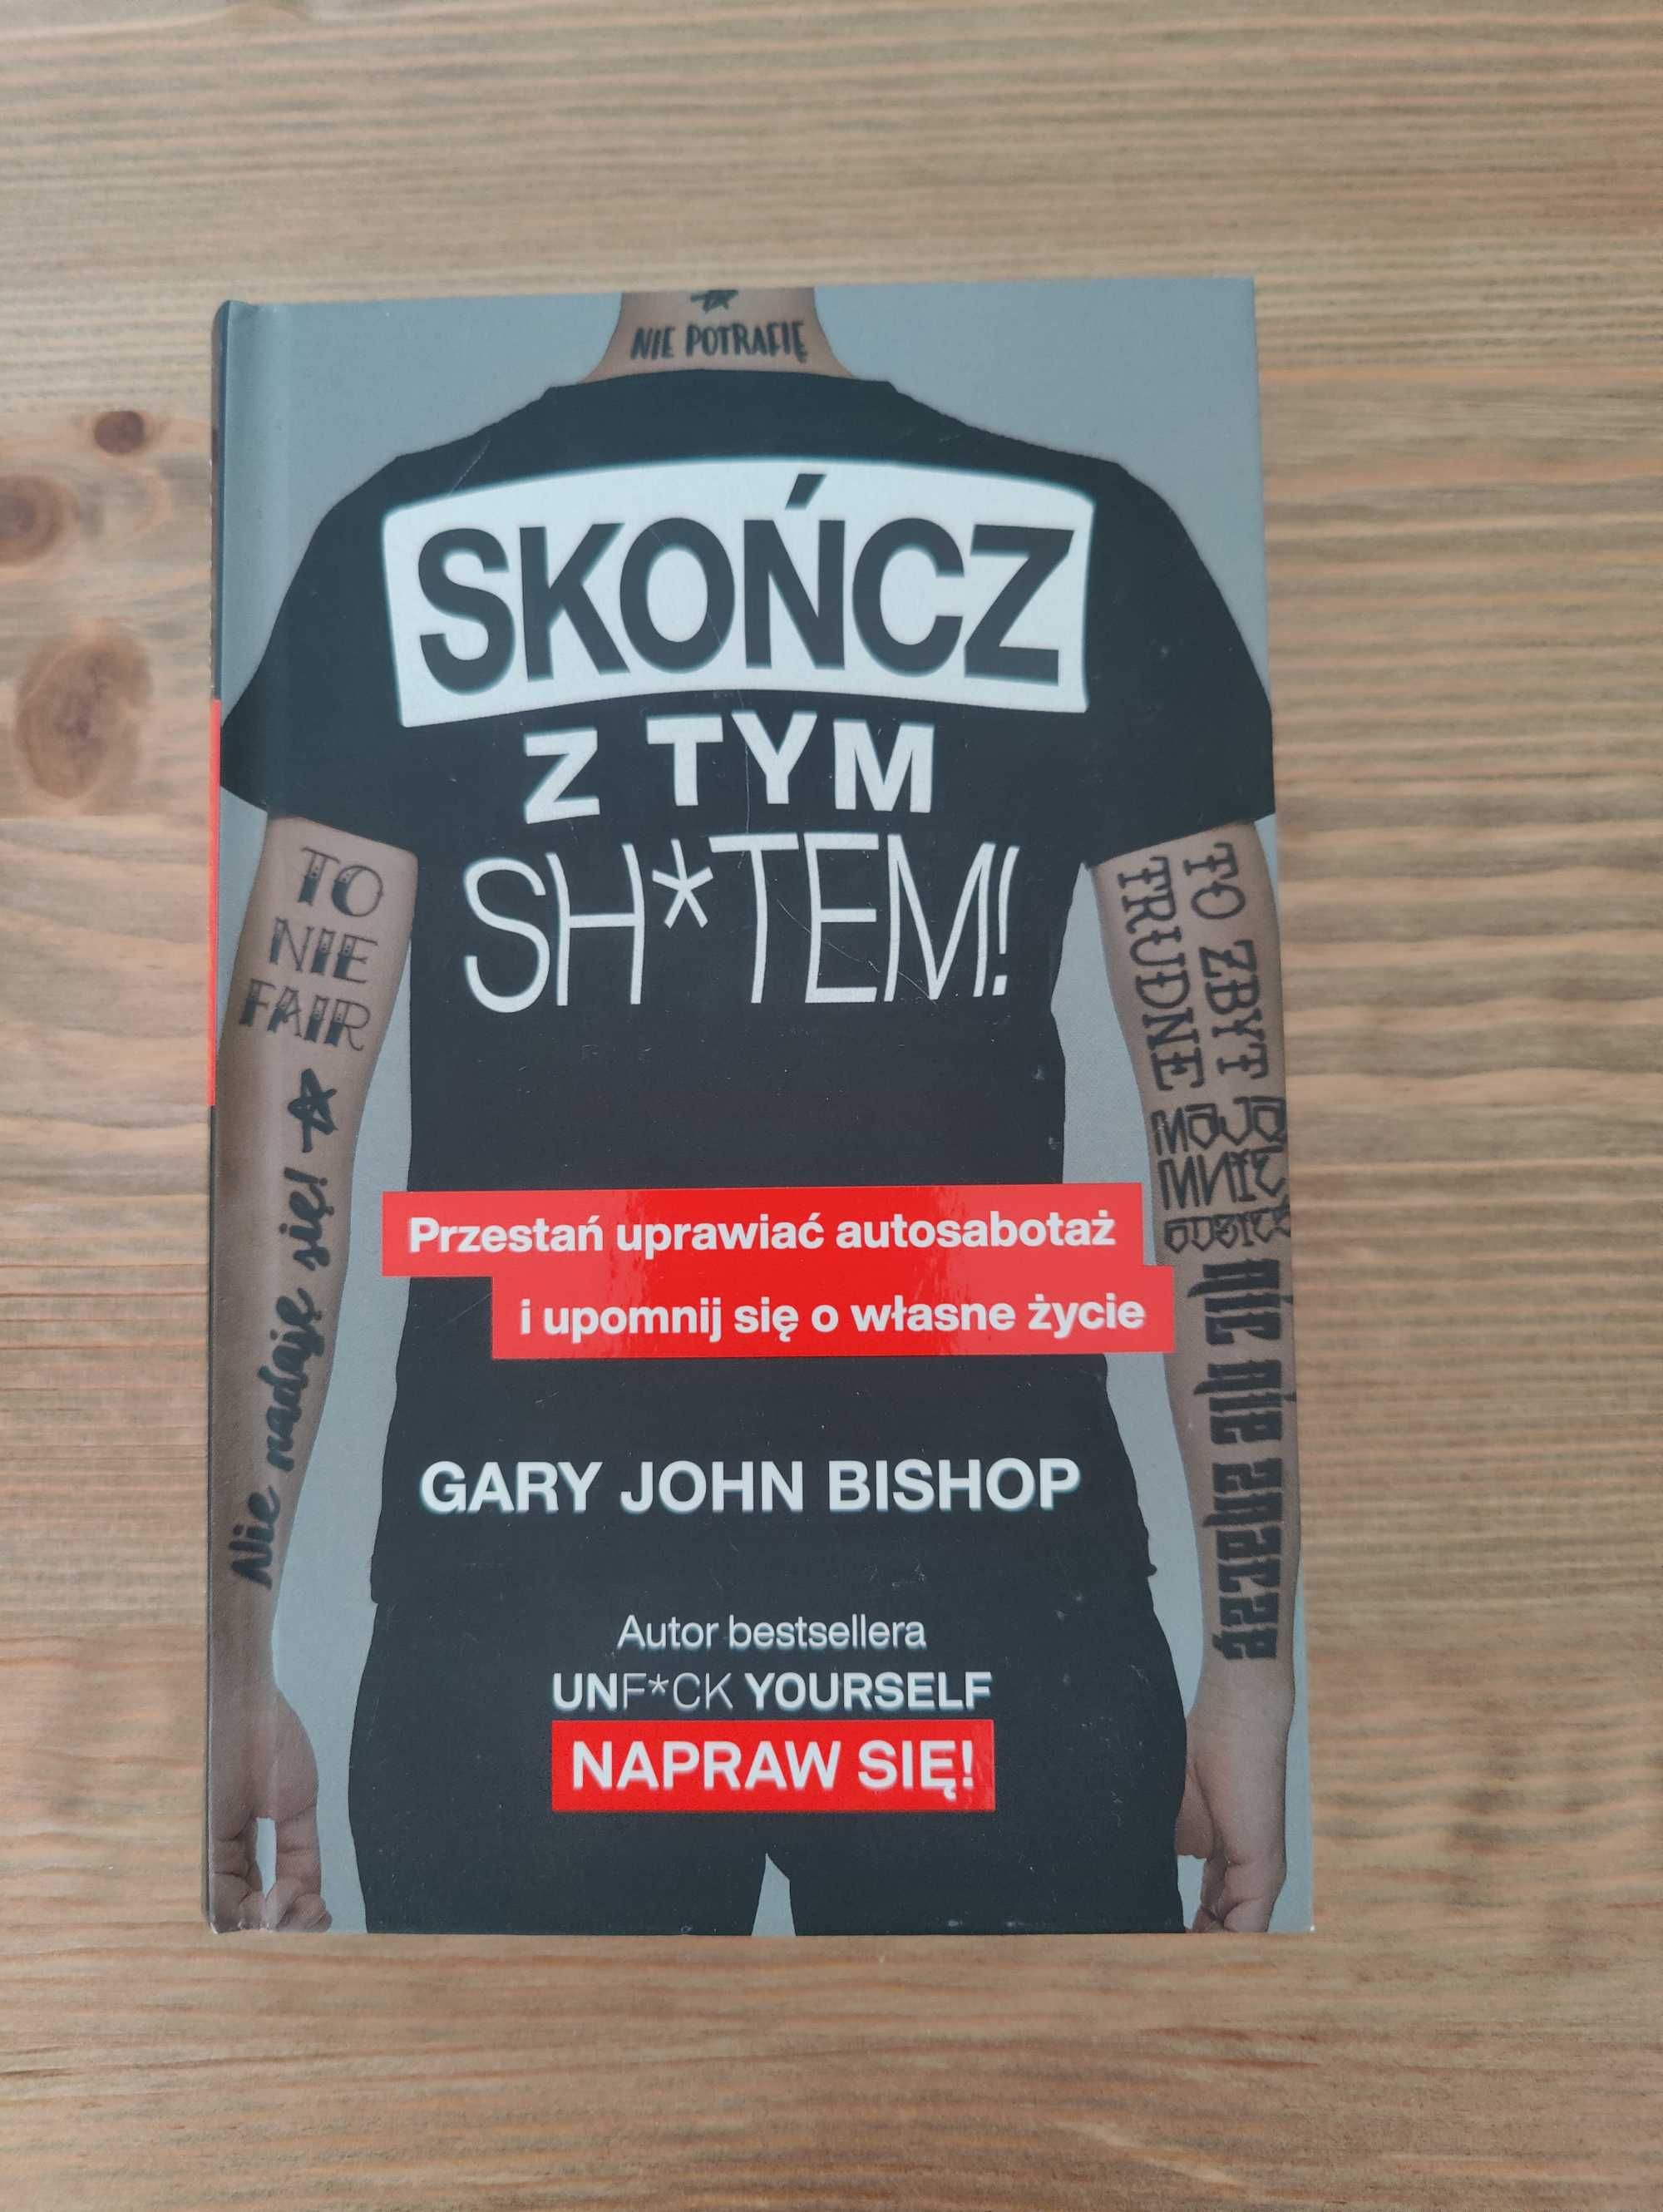 Książka "Skończ z tym Sh#tem! Gary John Bishop